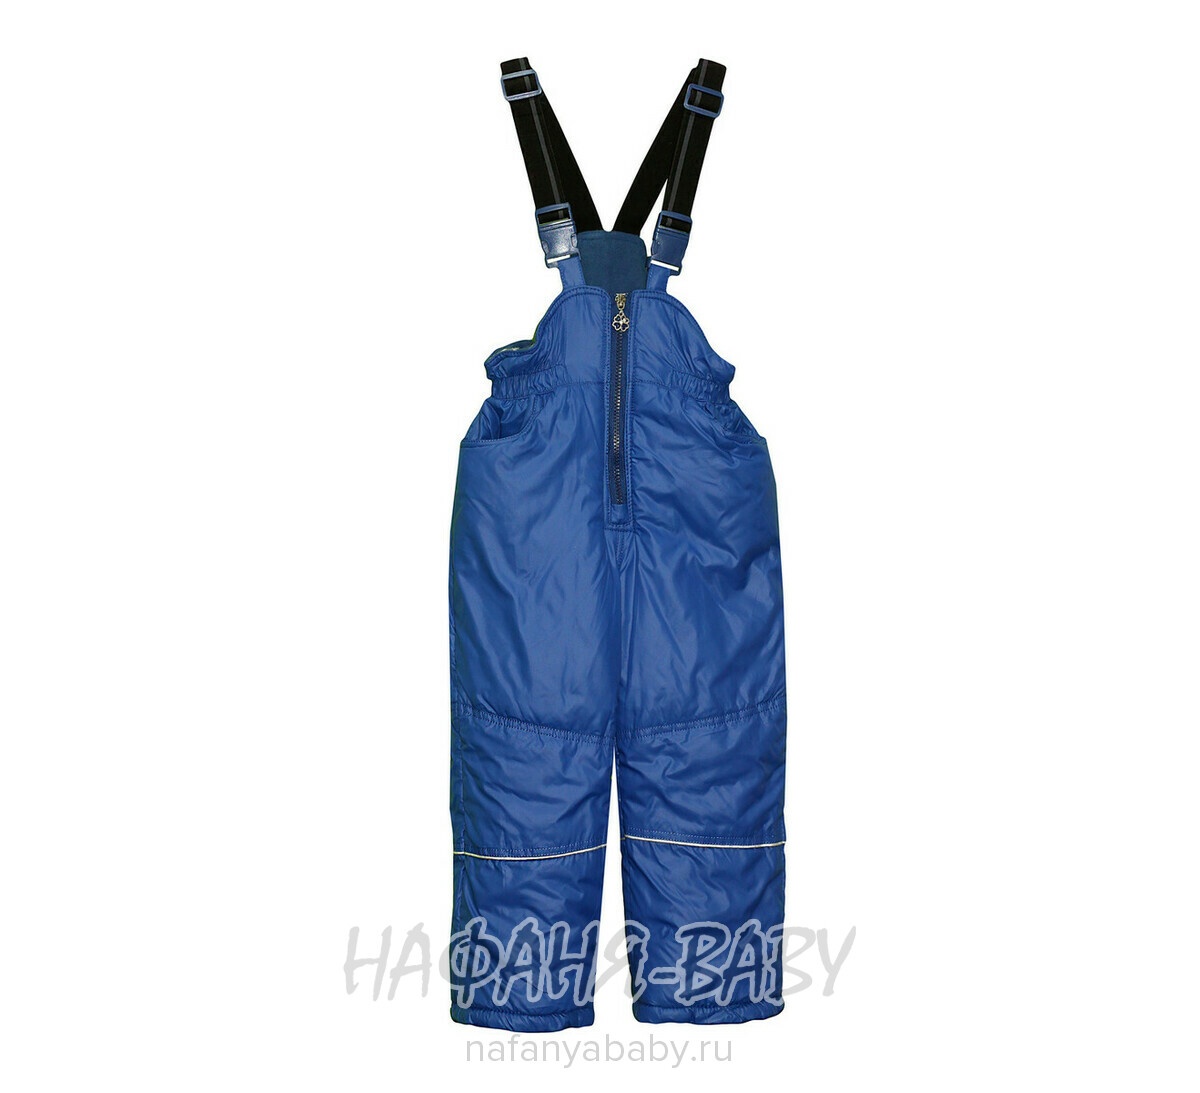 Зимний костюм (куртка+полукомбинезон+шарфик) DANPING, купить в интернет магазине Нафаня. арт: 6608.